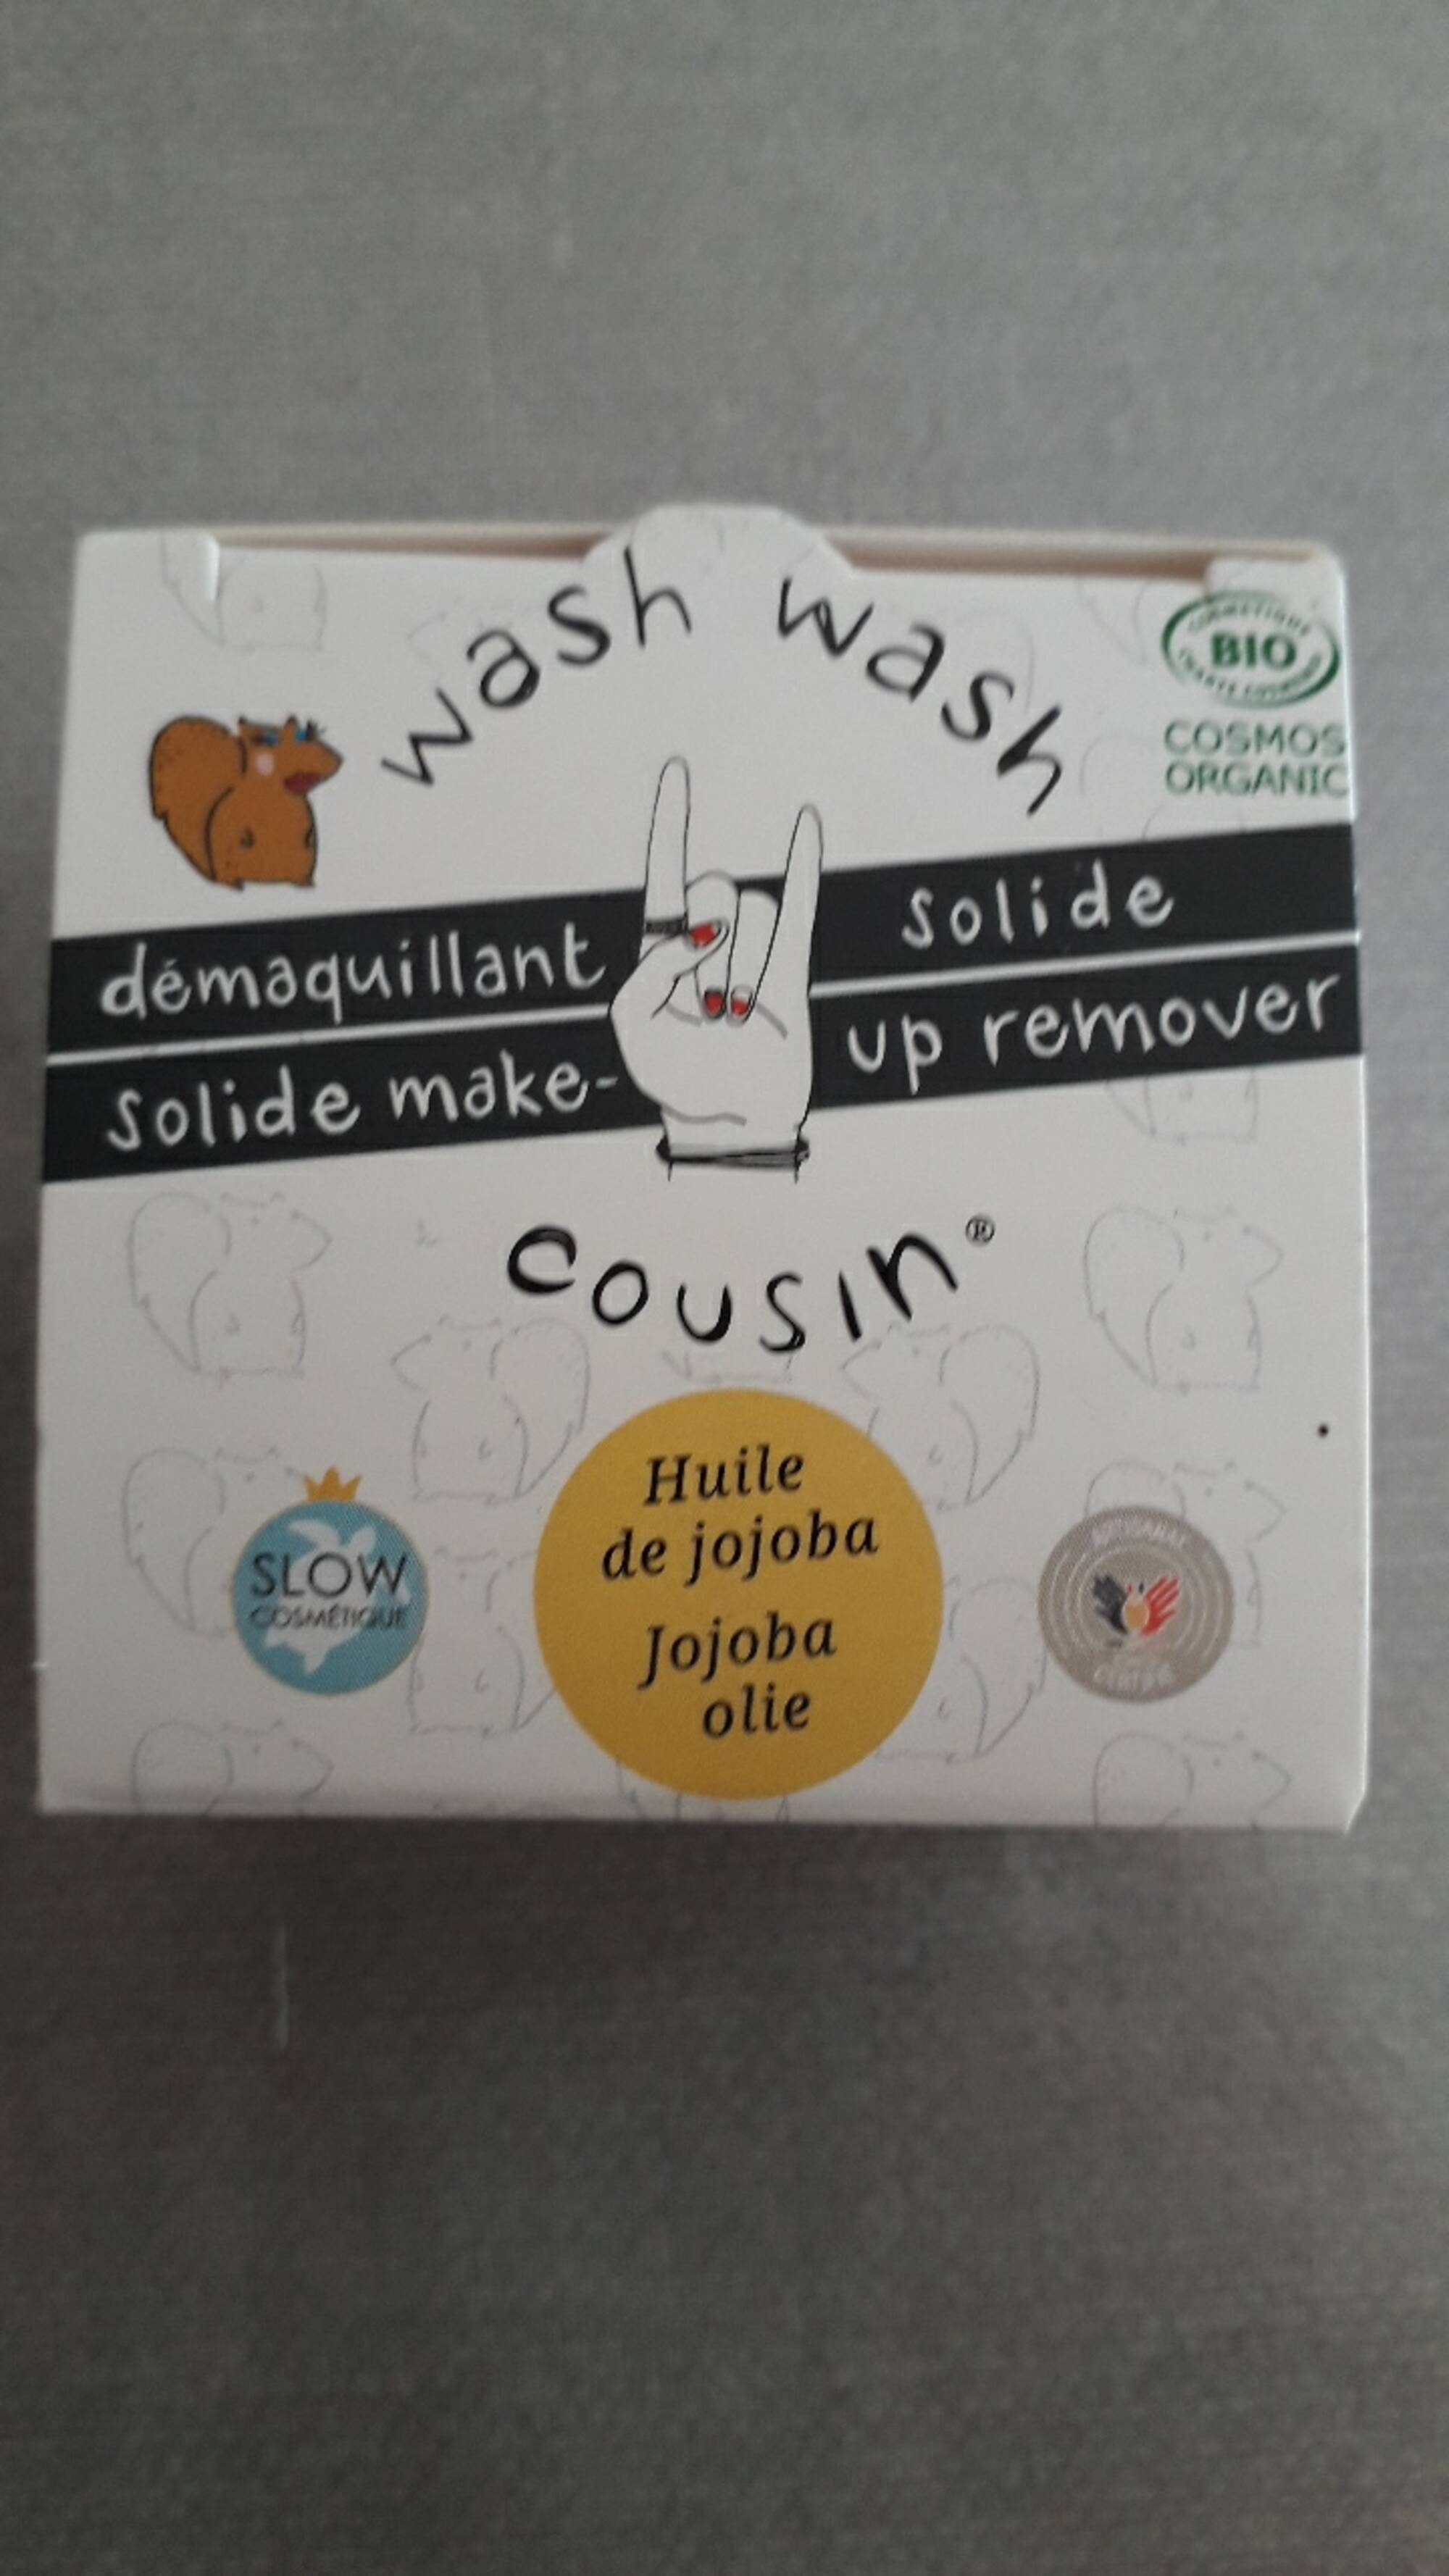 WASH WASH COUSIN - Démaquillant solide à l'huile de jojoba